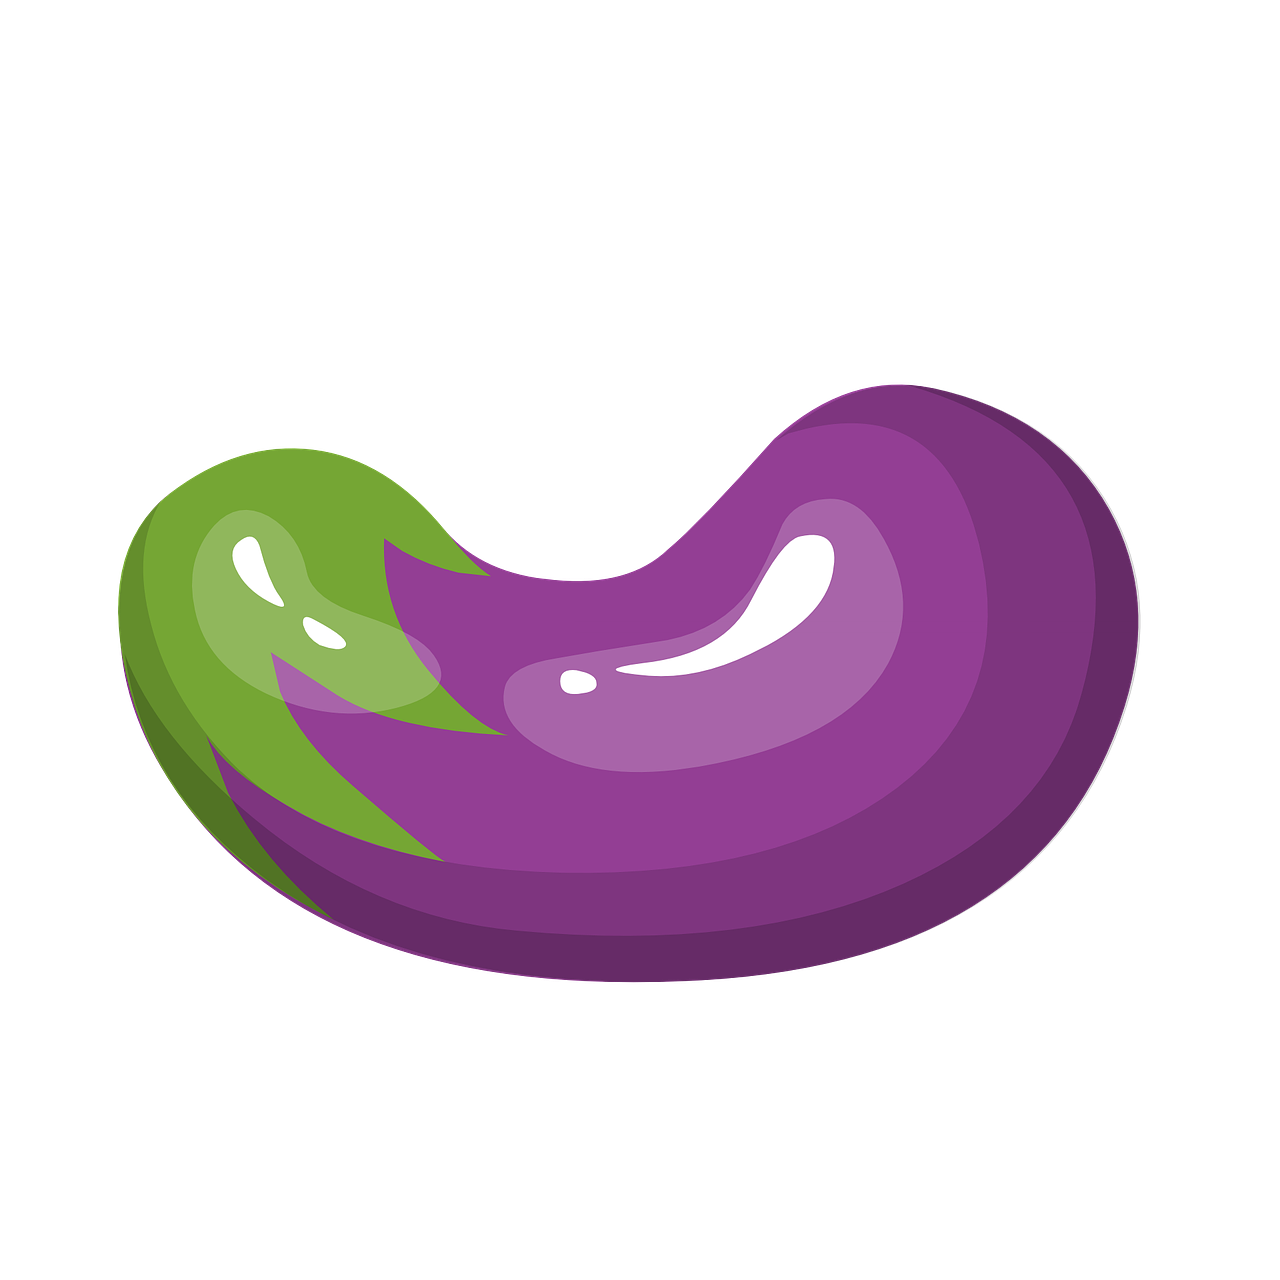 eggplant purple vegetables free photo